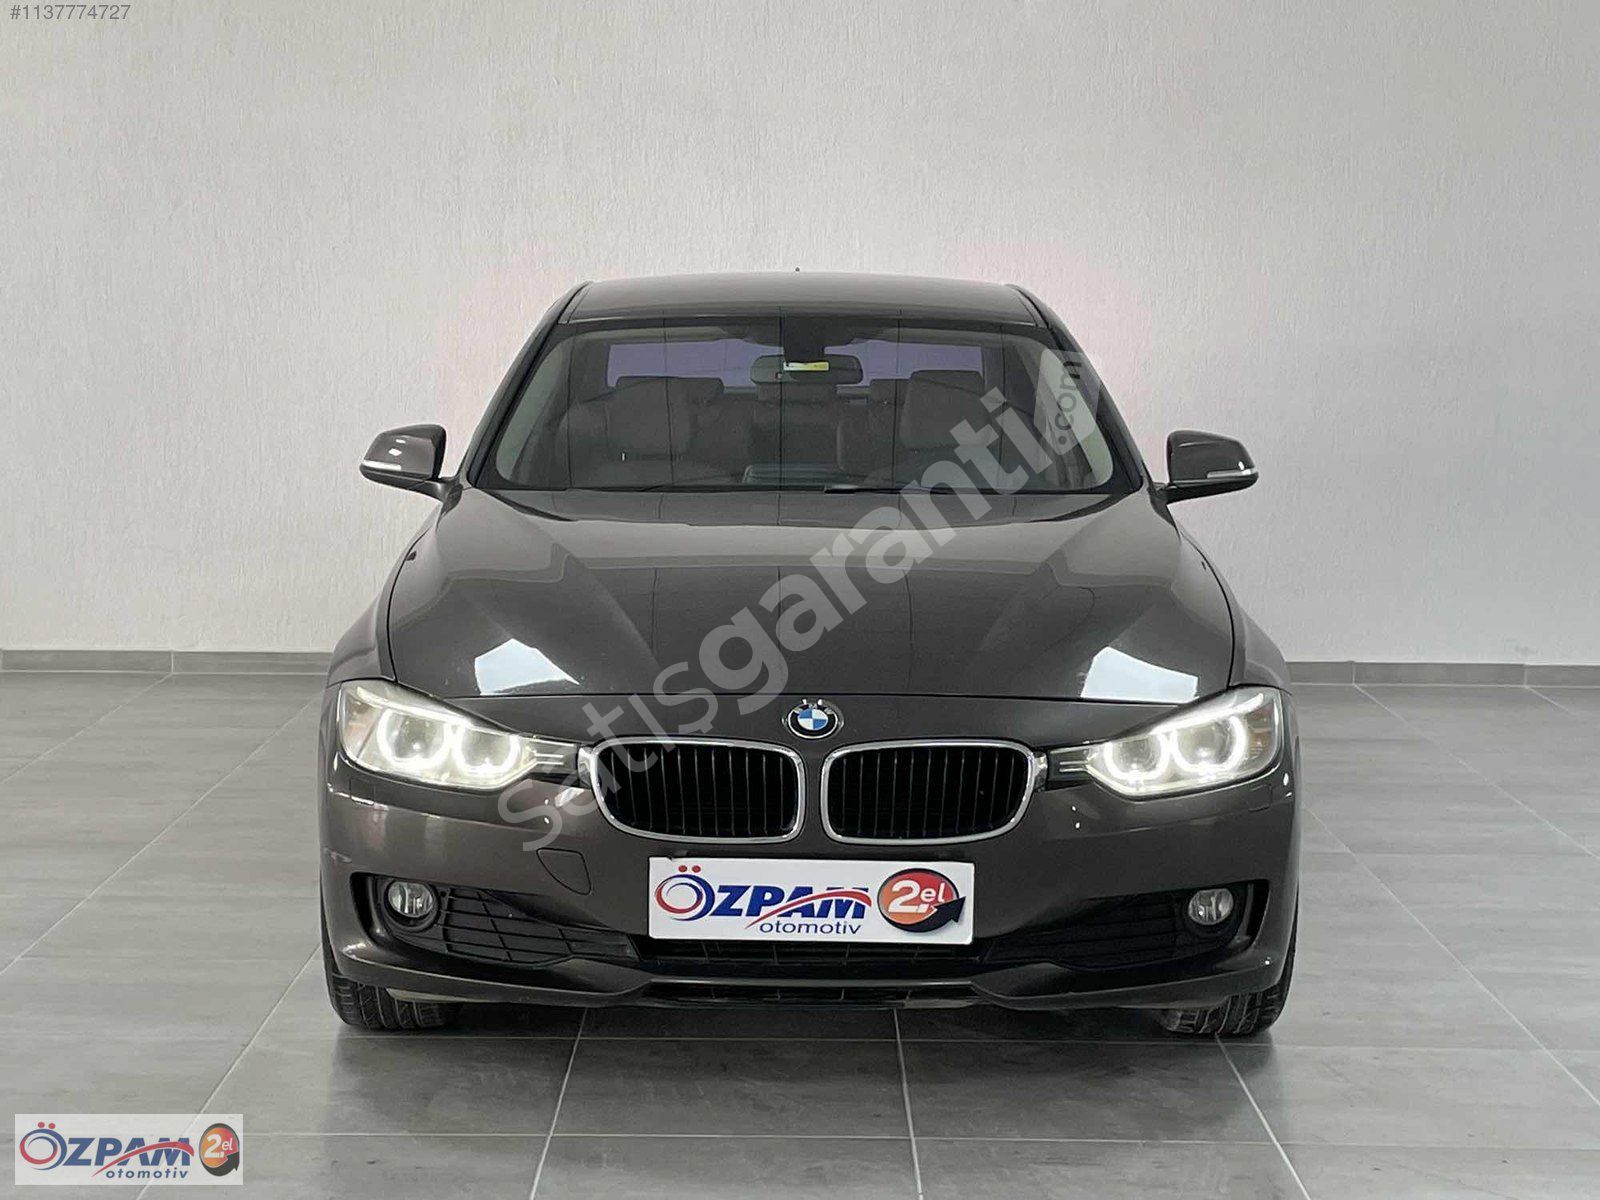 ÖZPAM 2.EL'DEN 2012 BMW 3.20d COMFORT PLUS 184 BG